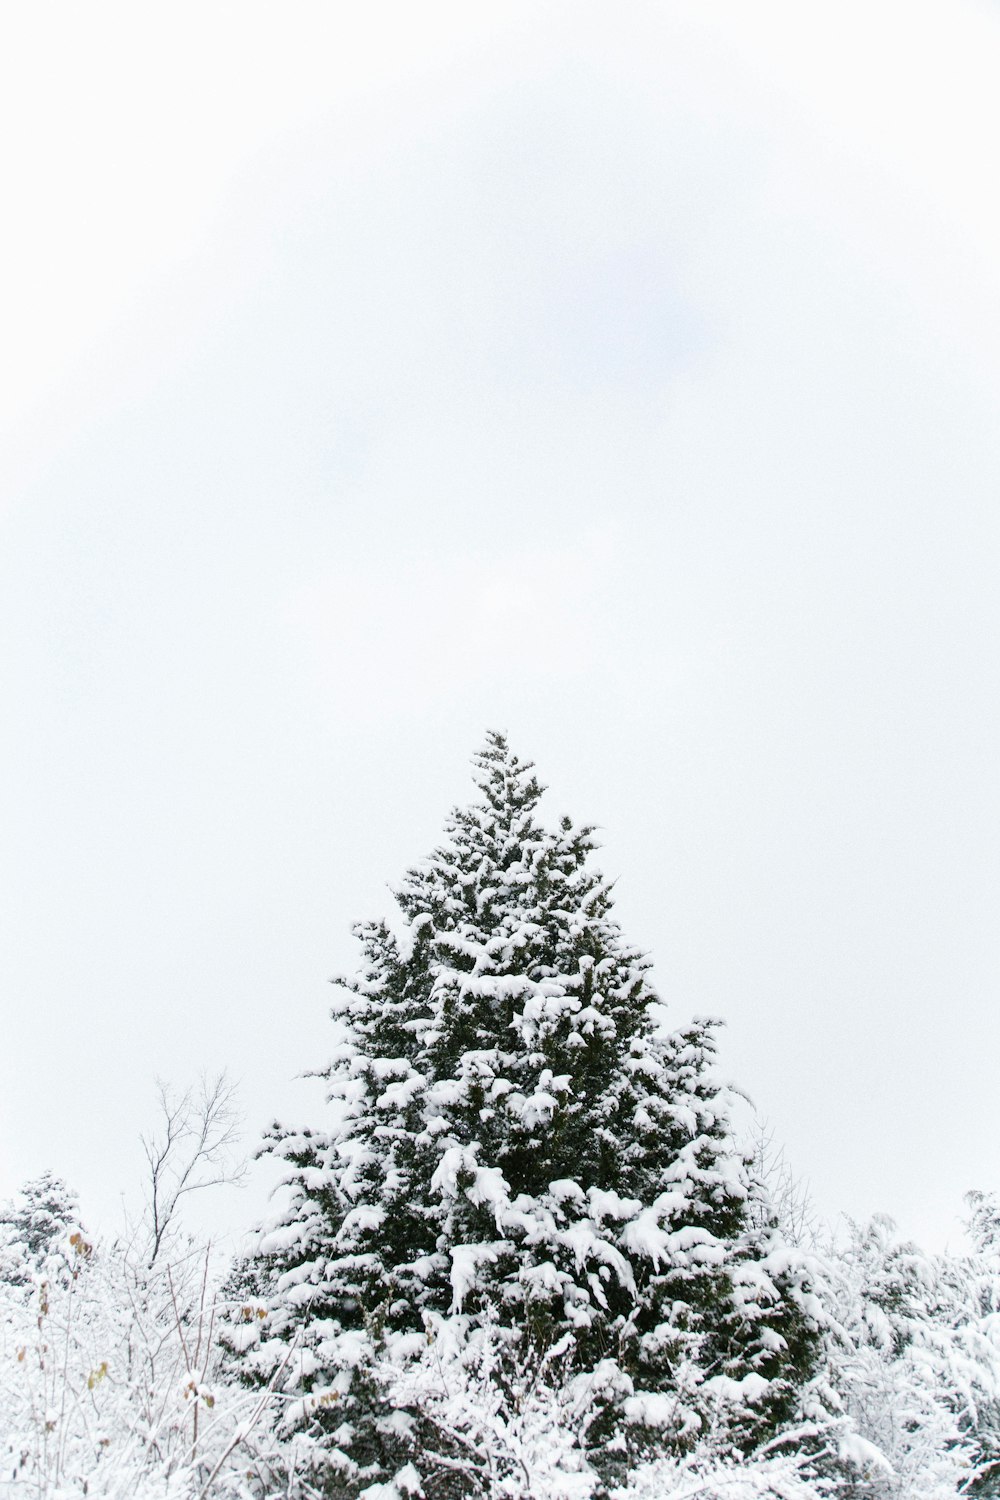 La cime d’un arbre couvert de neige.